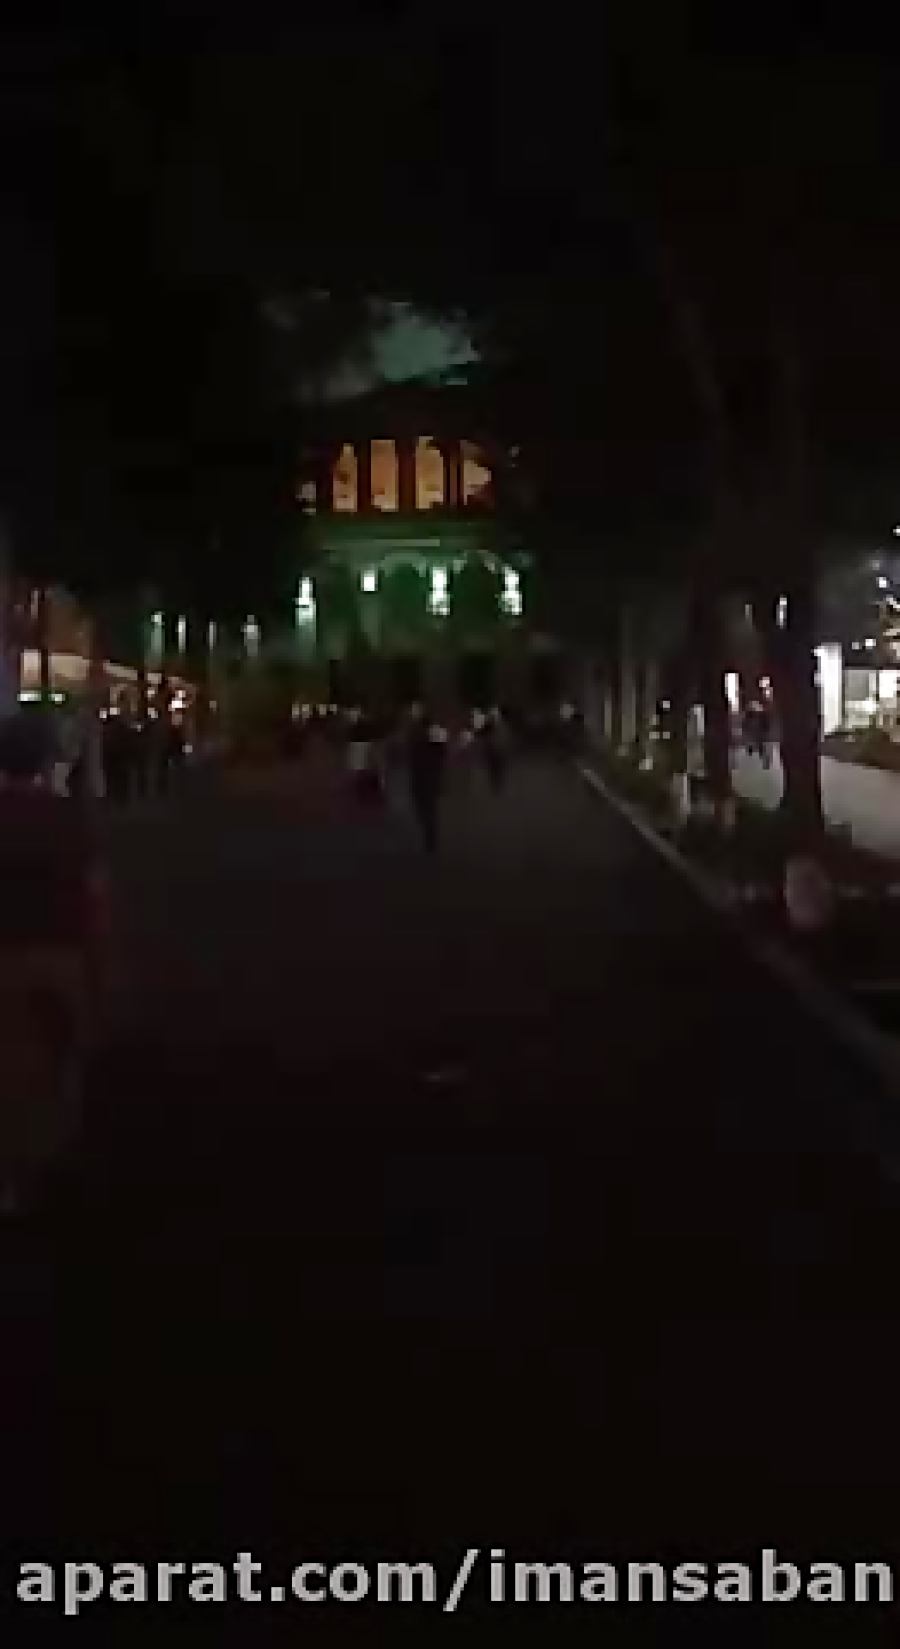 شب ایروان اطراف ساختمان اپرا همراه با آرامش زمان39ثانیه